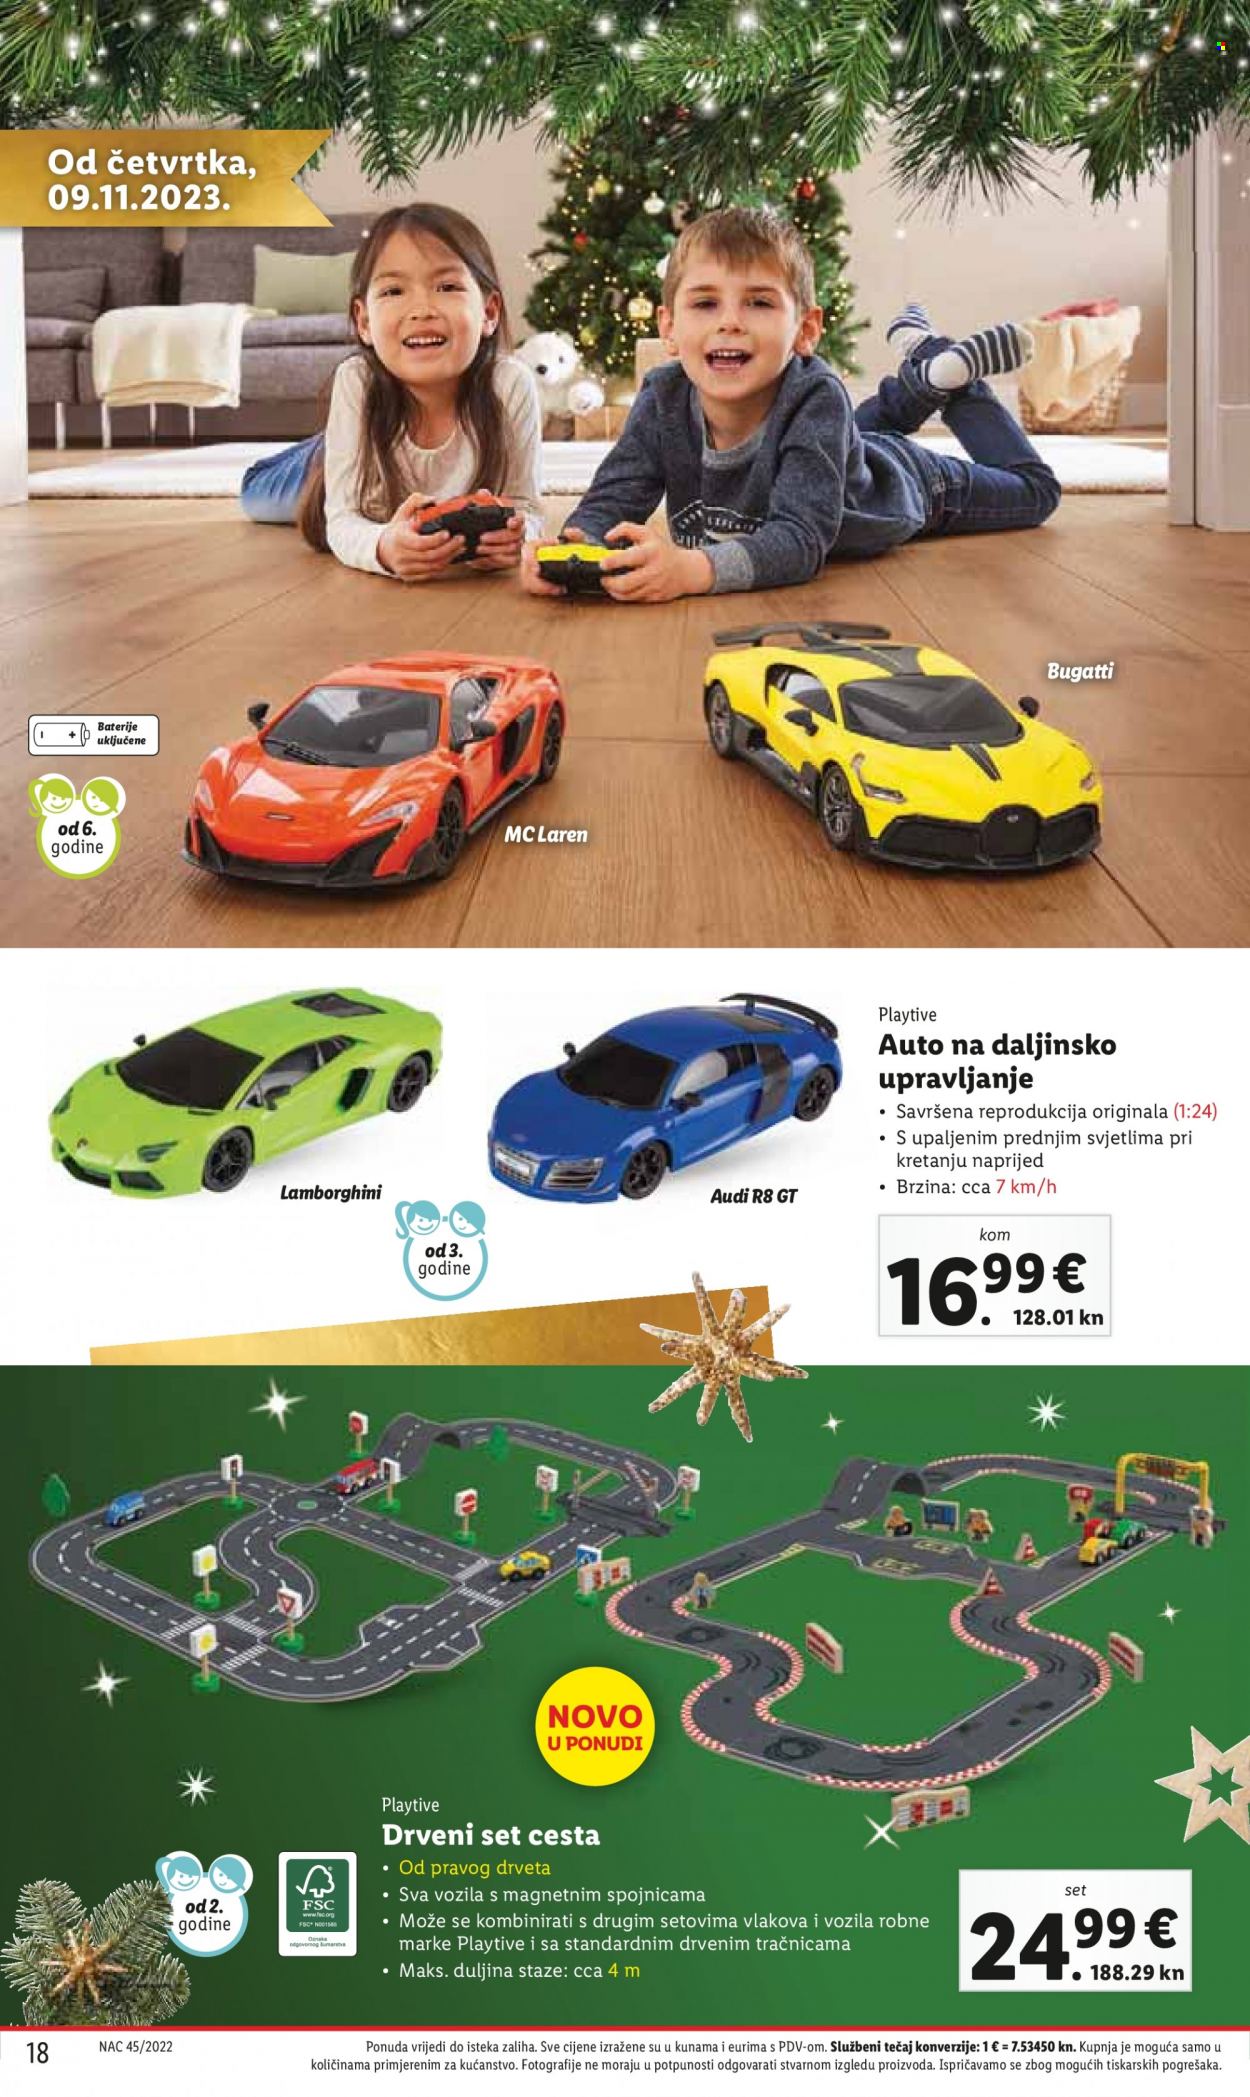 Lidl katalog - Sniženi proizvodi - auto na daljinsko upravljanje, igračka, drvena igračka, Playtive®, trkaća staza. Stranica 18.